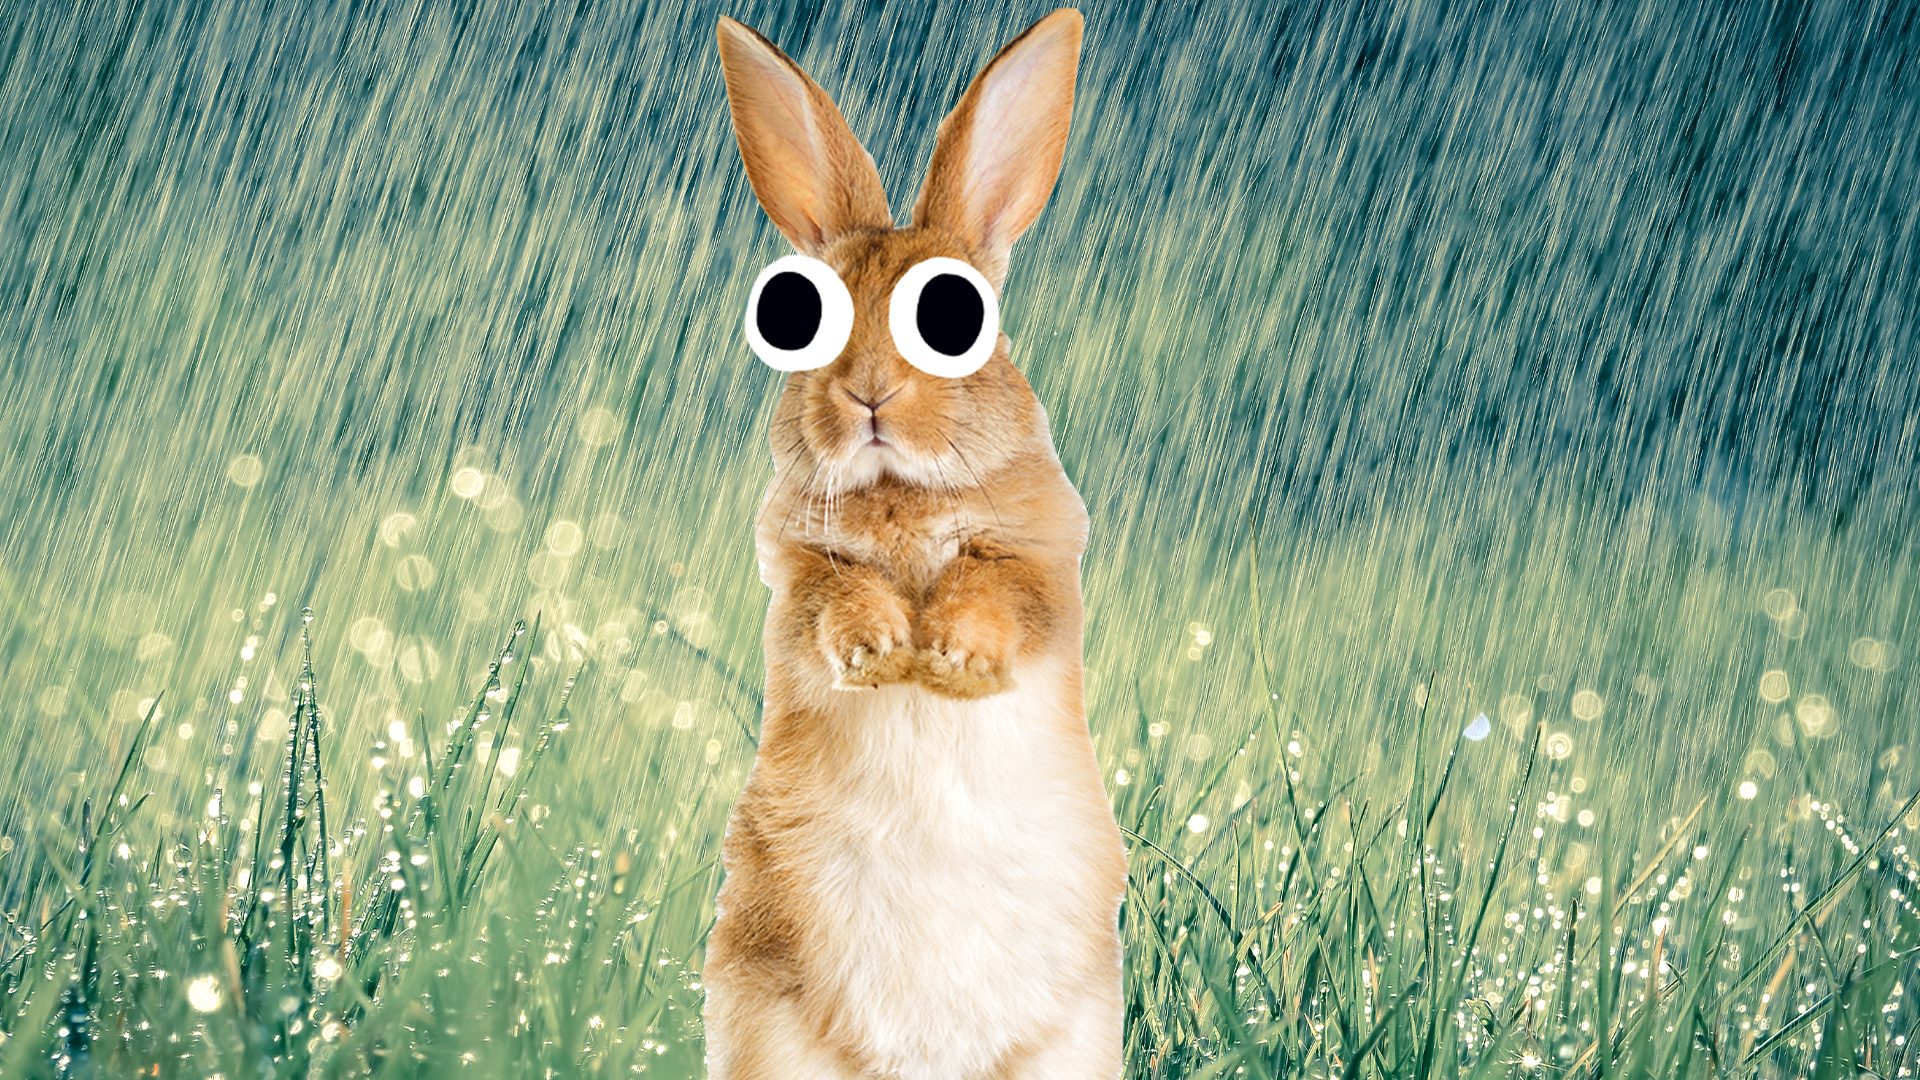 Rainy scene with Beano bunny